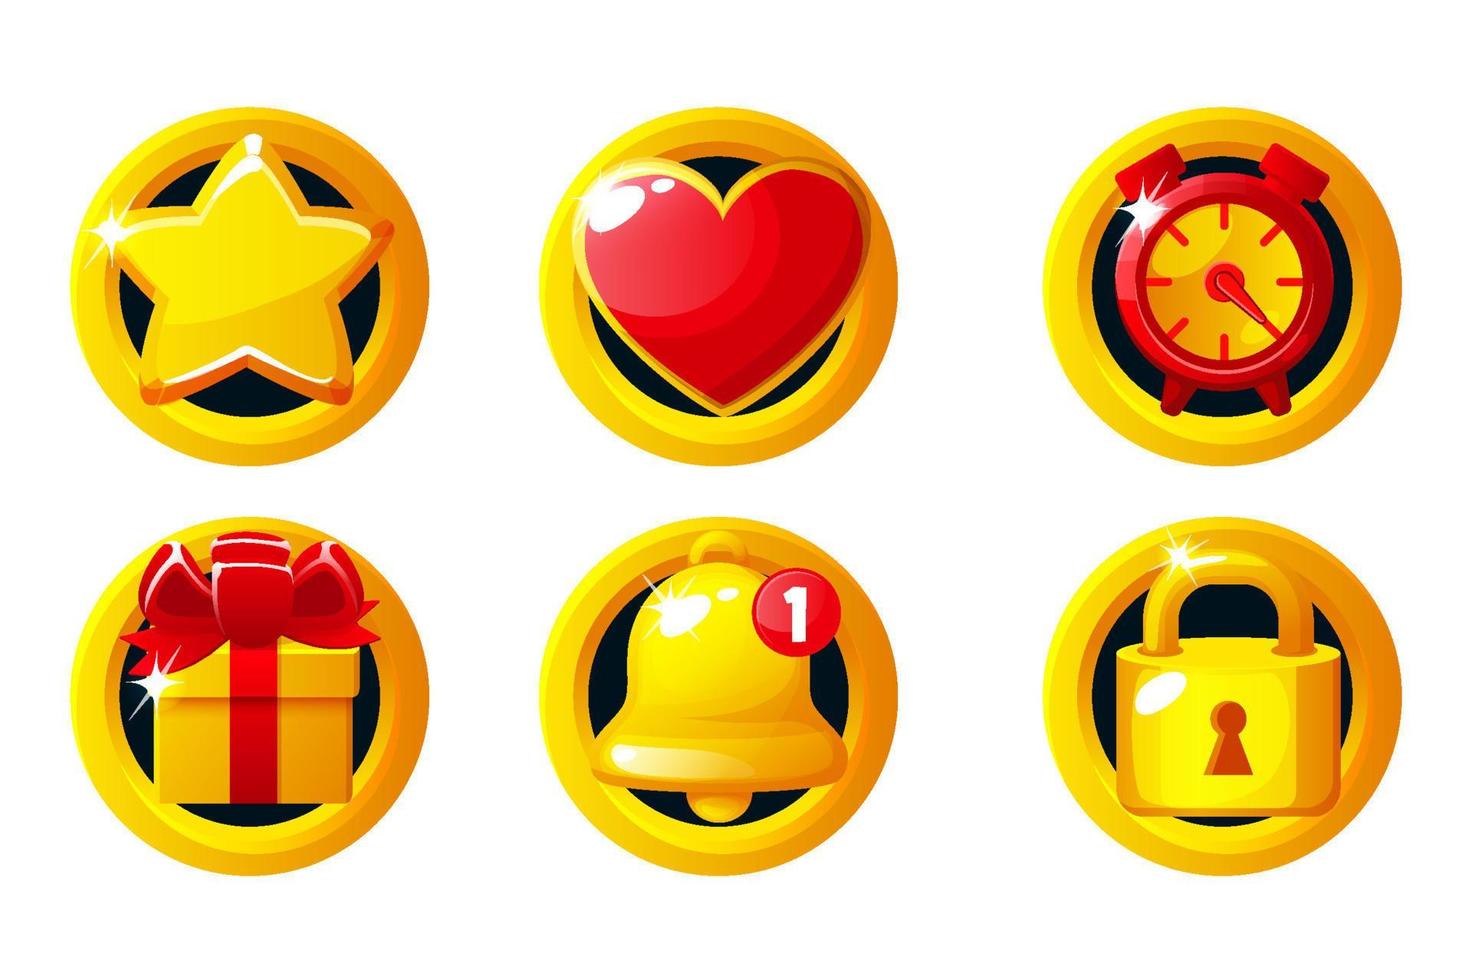 reeks van gouden spel iconen- ster, hart, klok, geschenk doos, klok en op slot doen. spel app pictogrammen vector